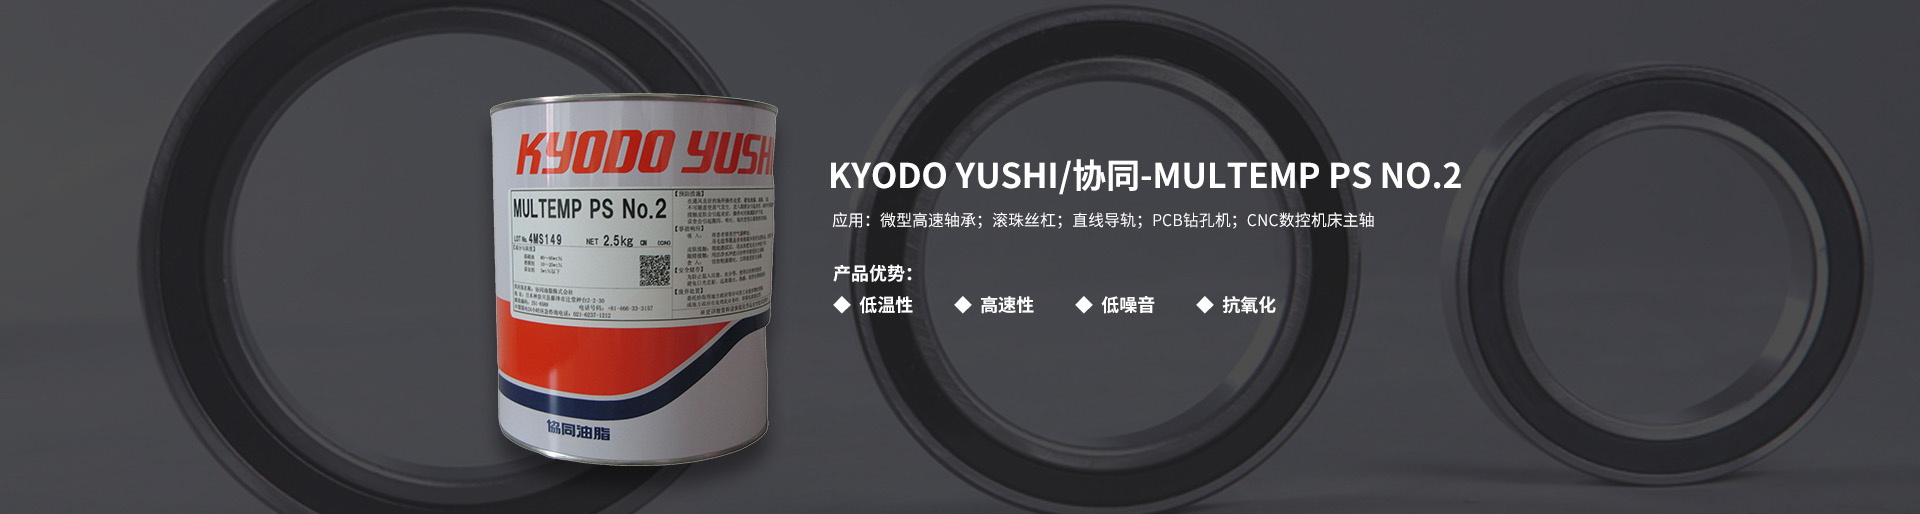 KYODO YUSHI/协同 MULTEMP PS NO.2